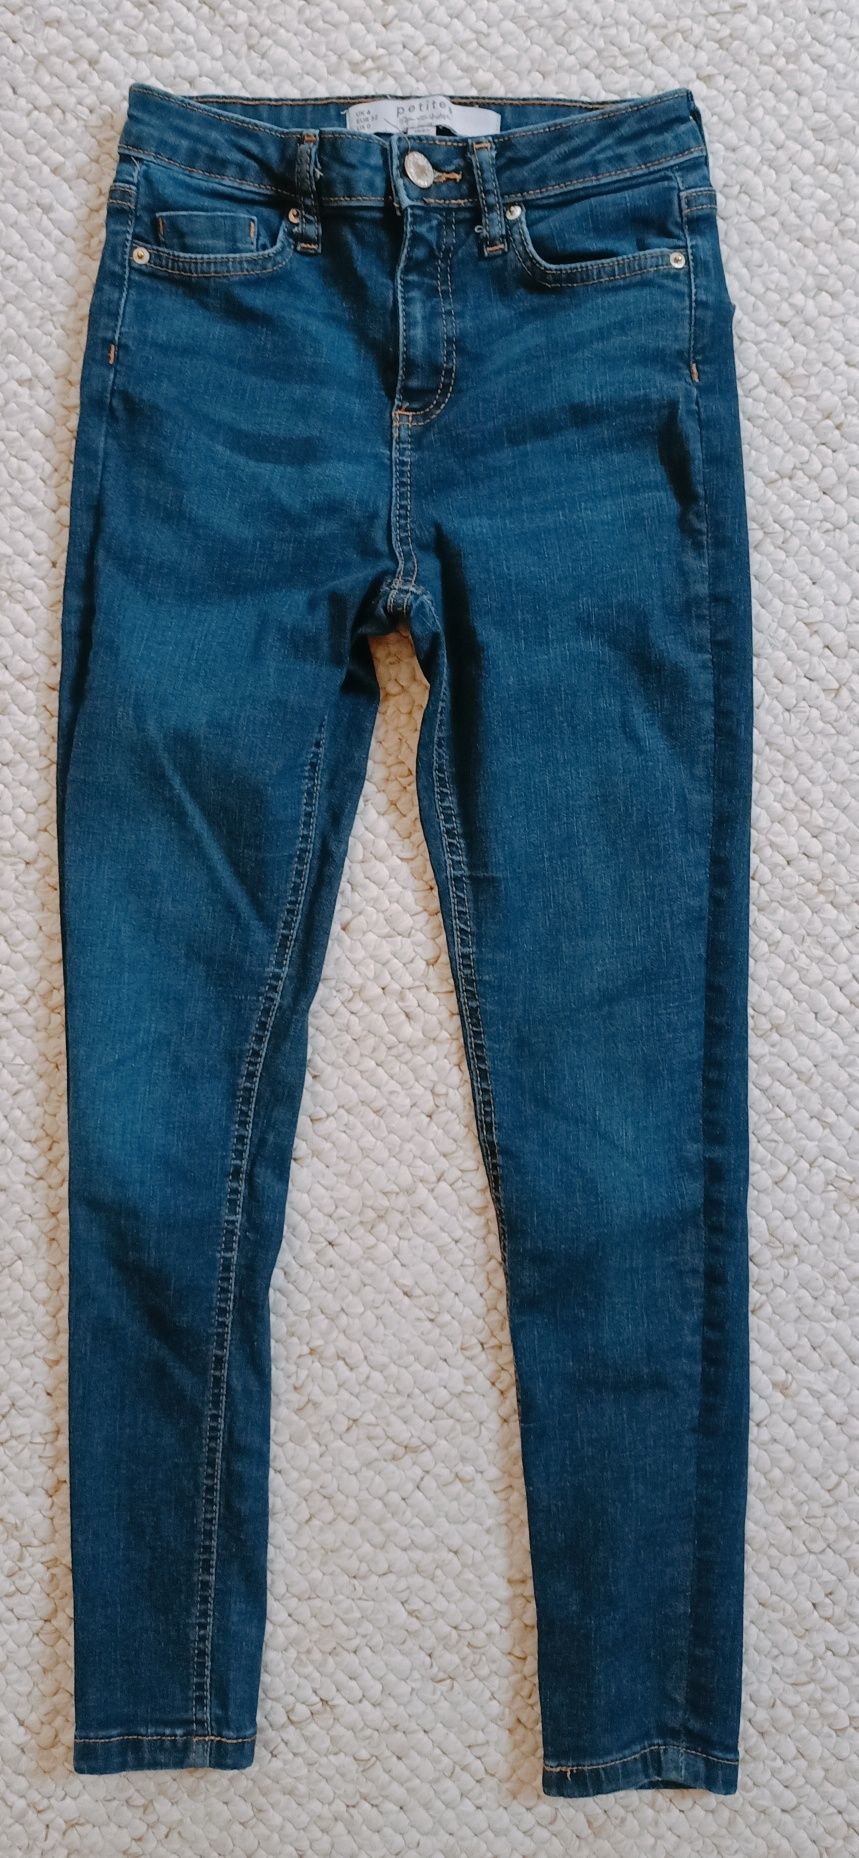 Spodnie jeansowe jeans rurki skinny XS miss